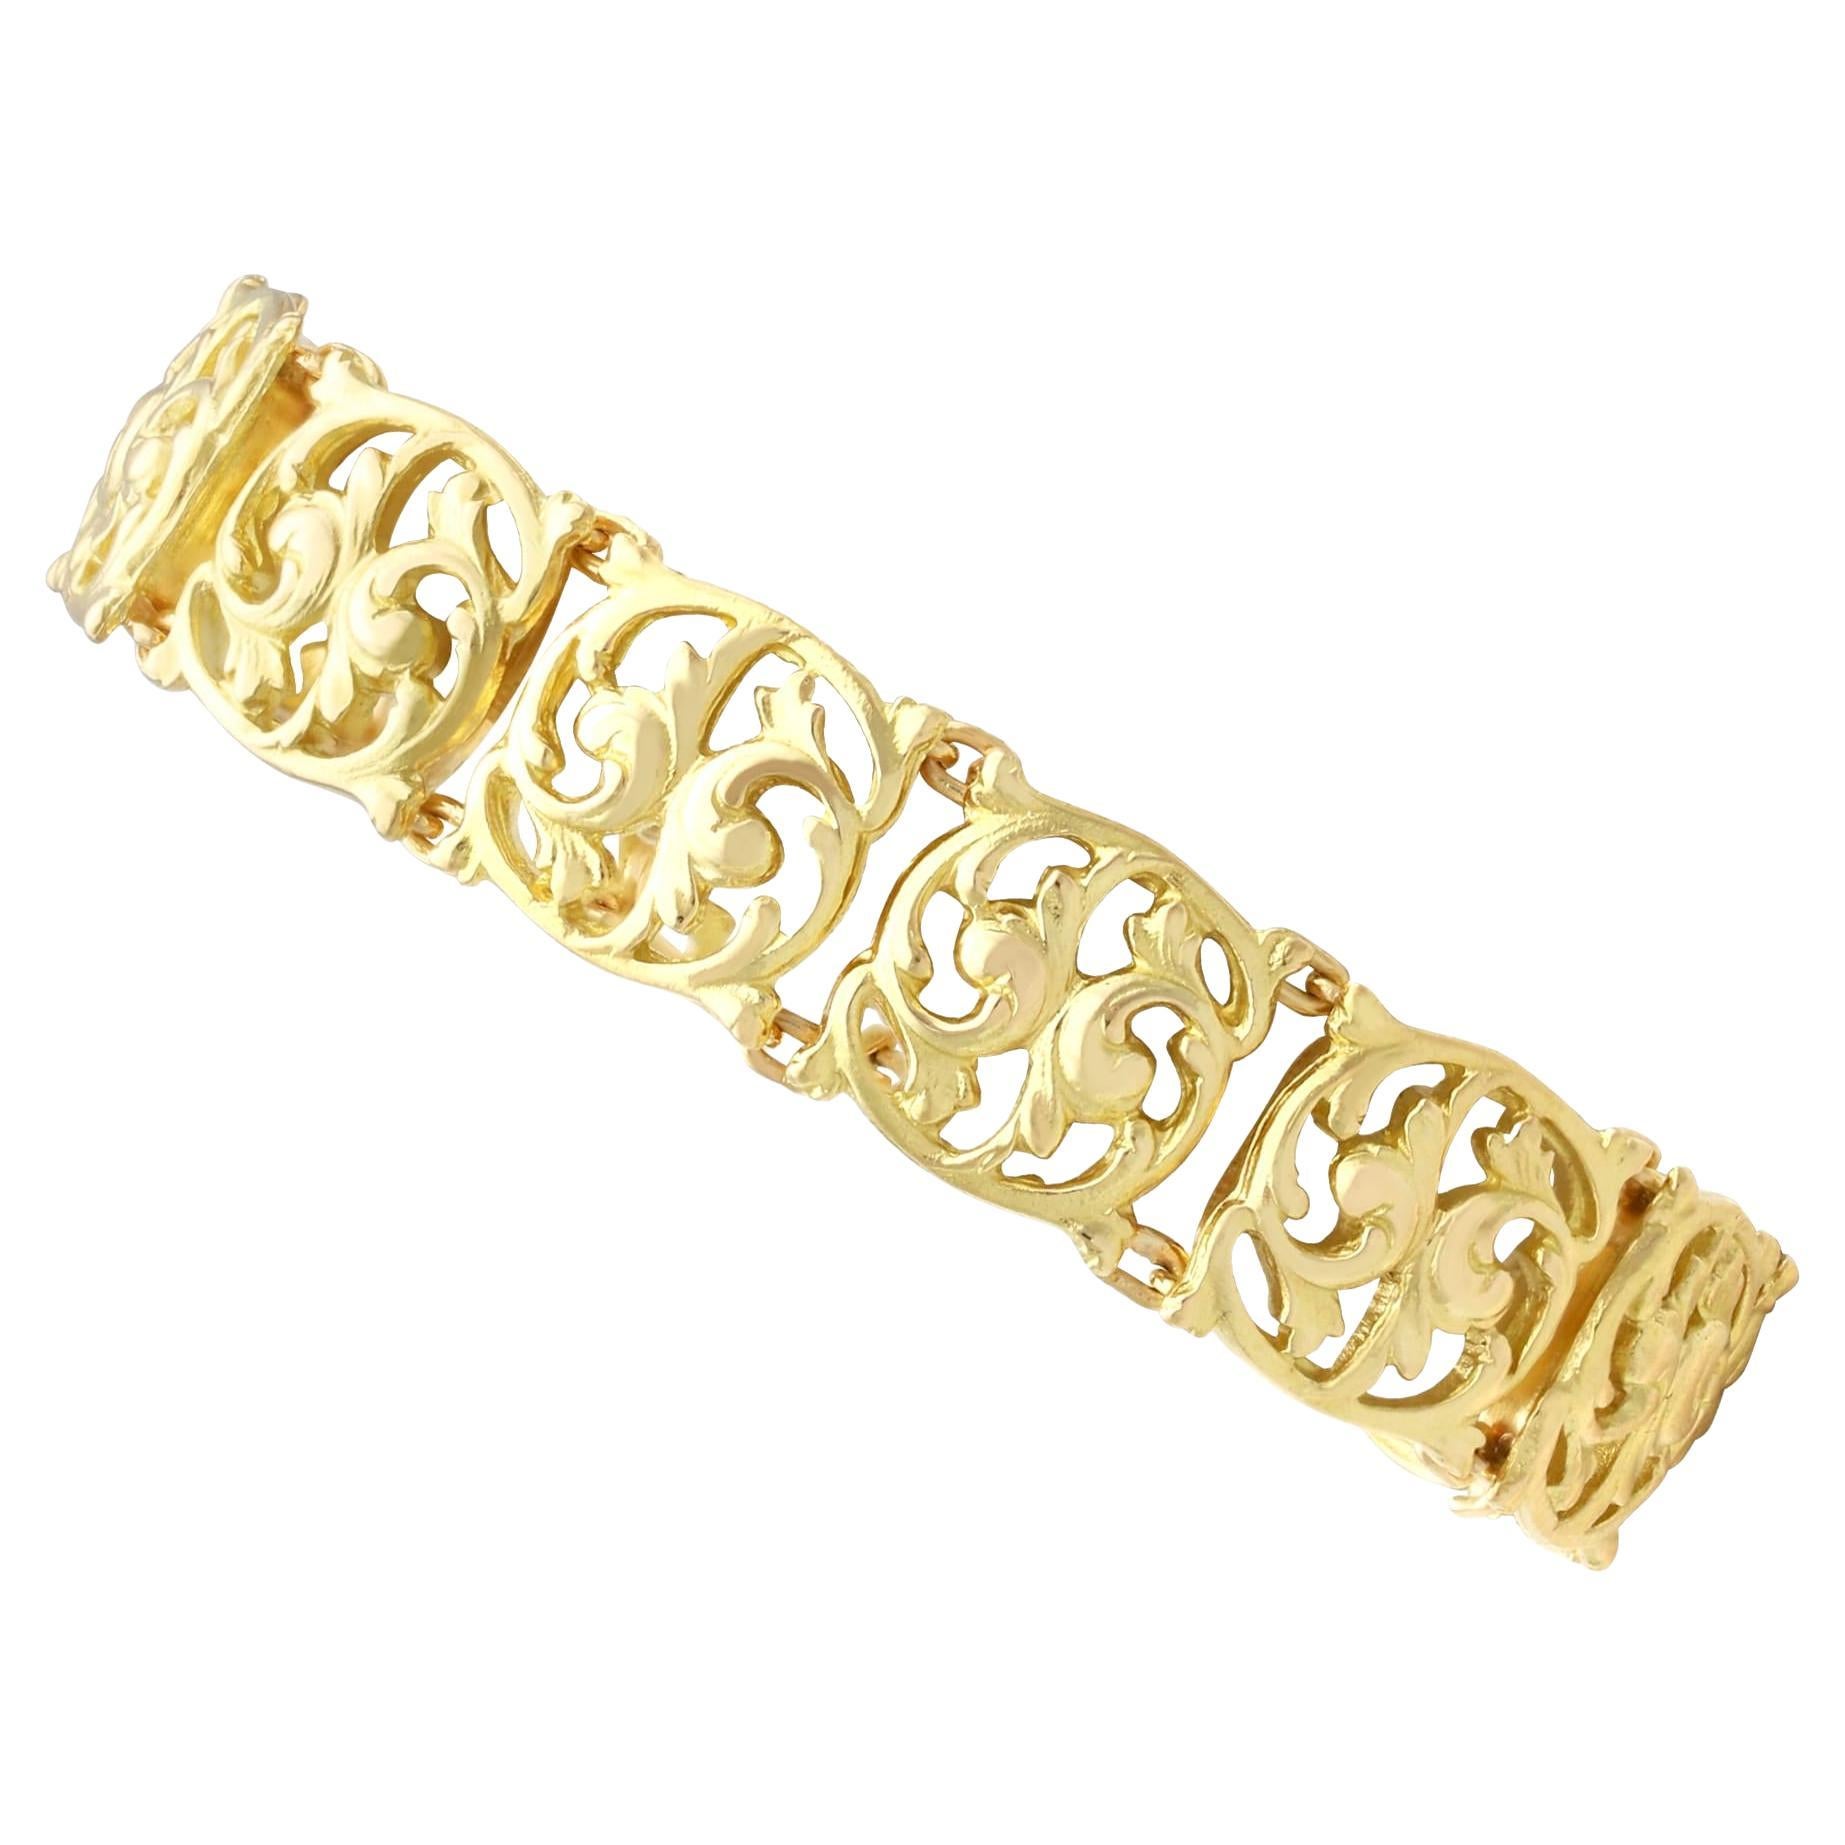 Antique Art Nouveau 18 Karat Yellow Gold Bracelet